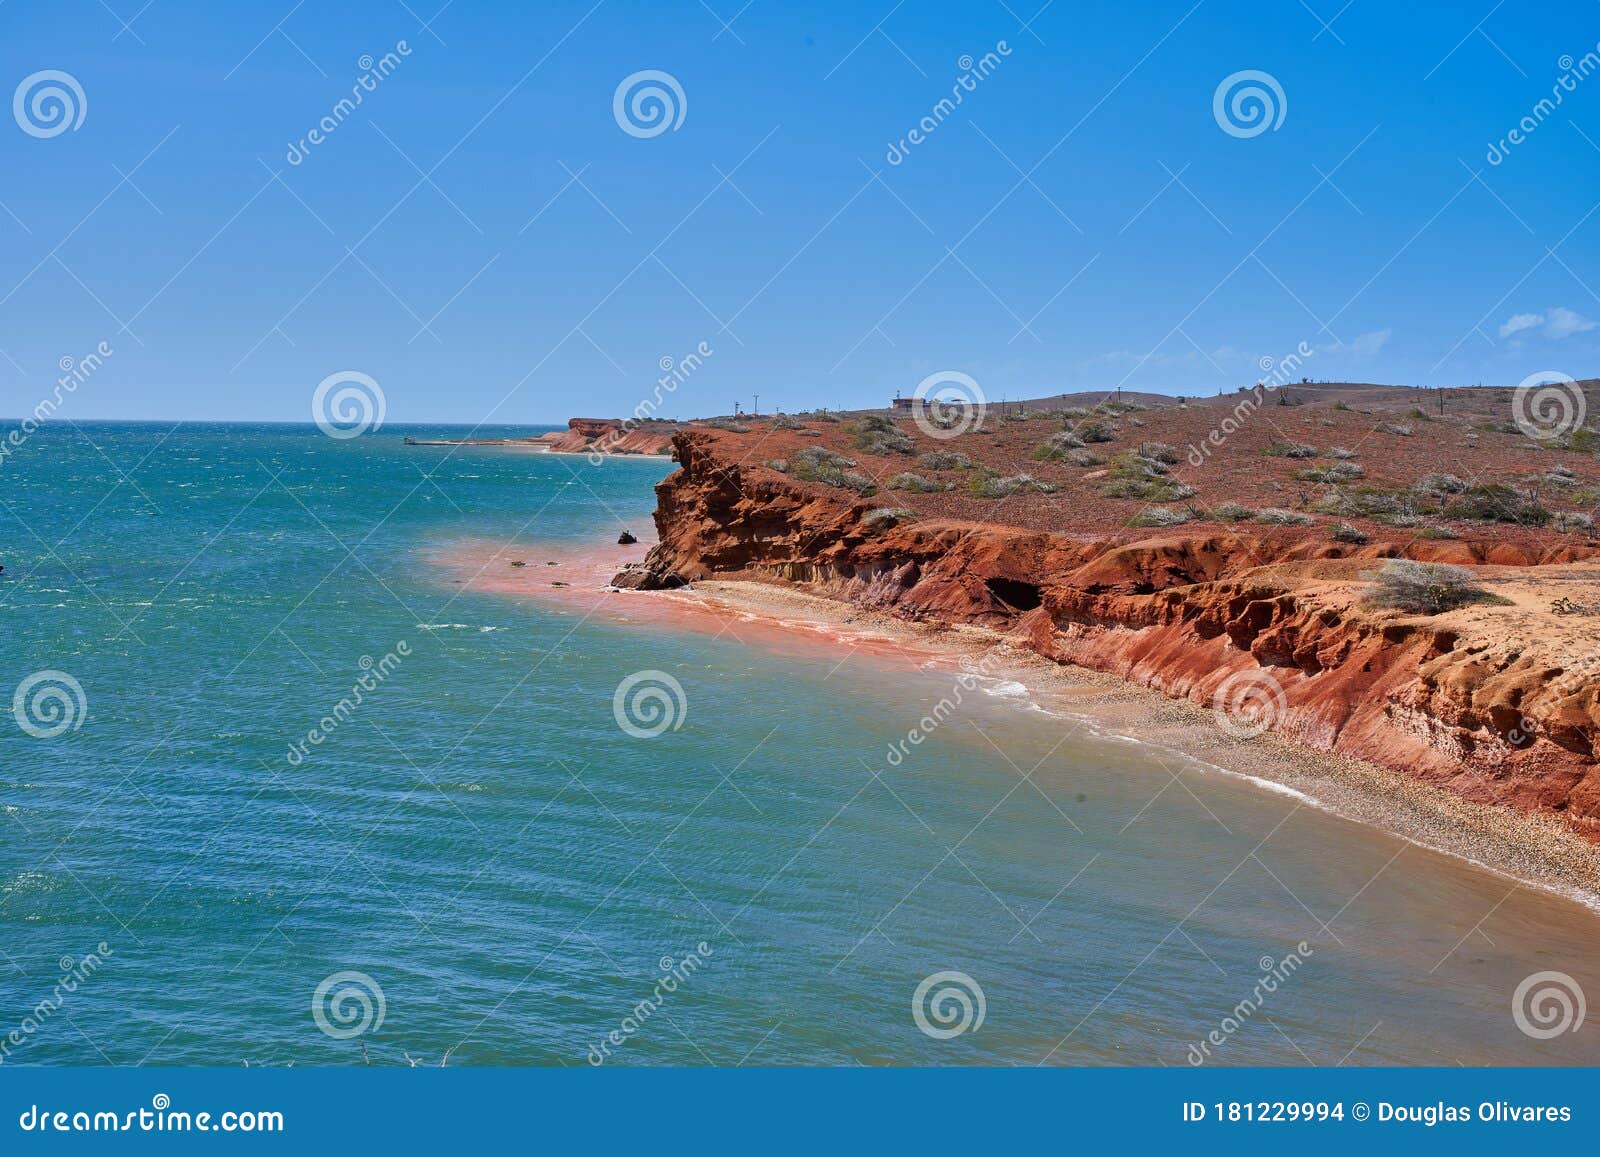 view of coche island seashore